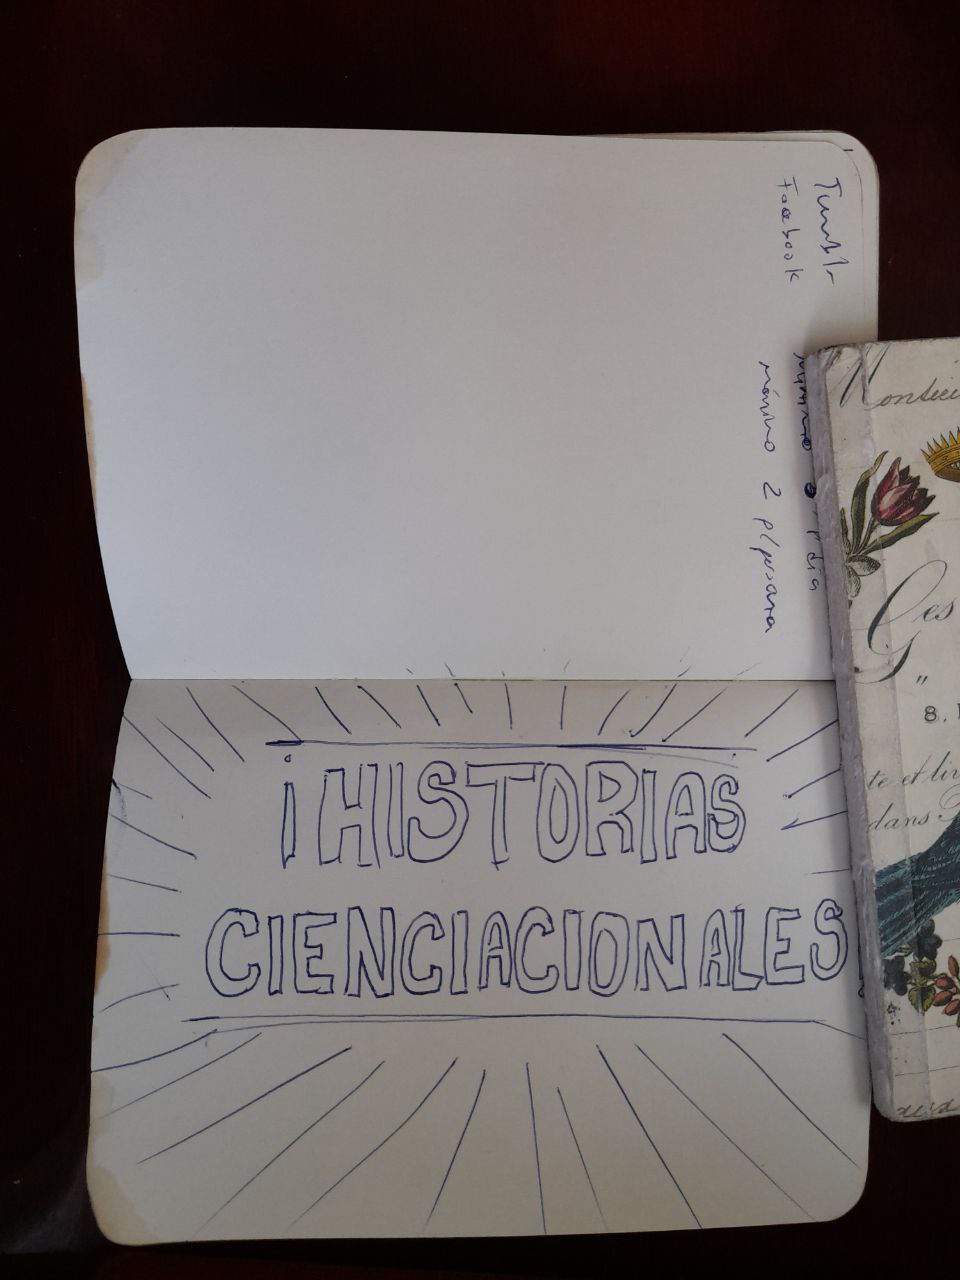 Imagen de otra página del cuaderno del nombre decidido: ¡Historias Cienciacionales!